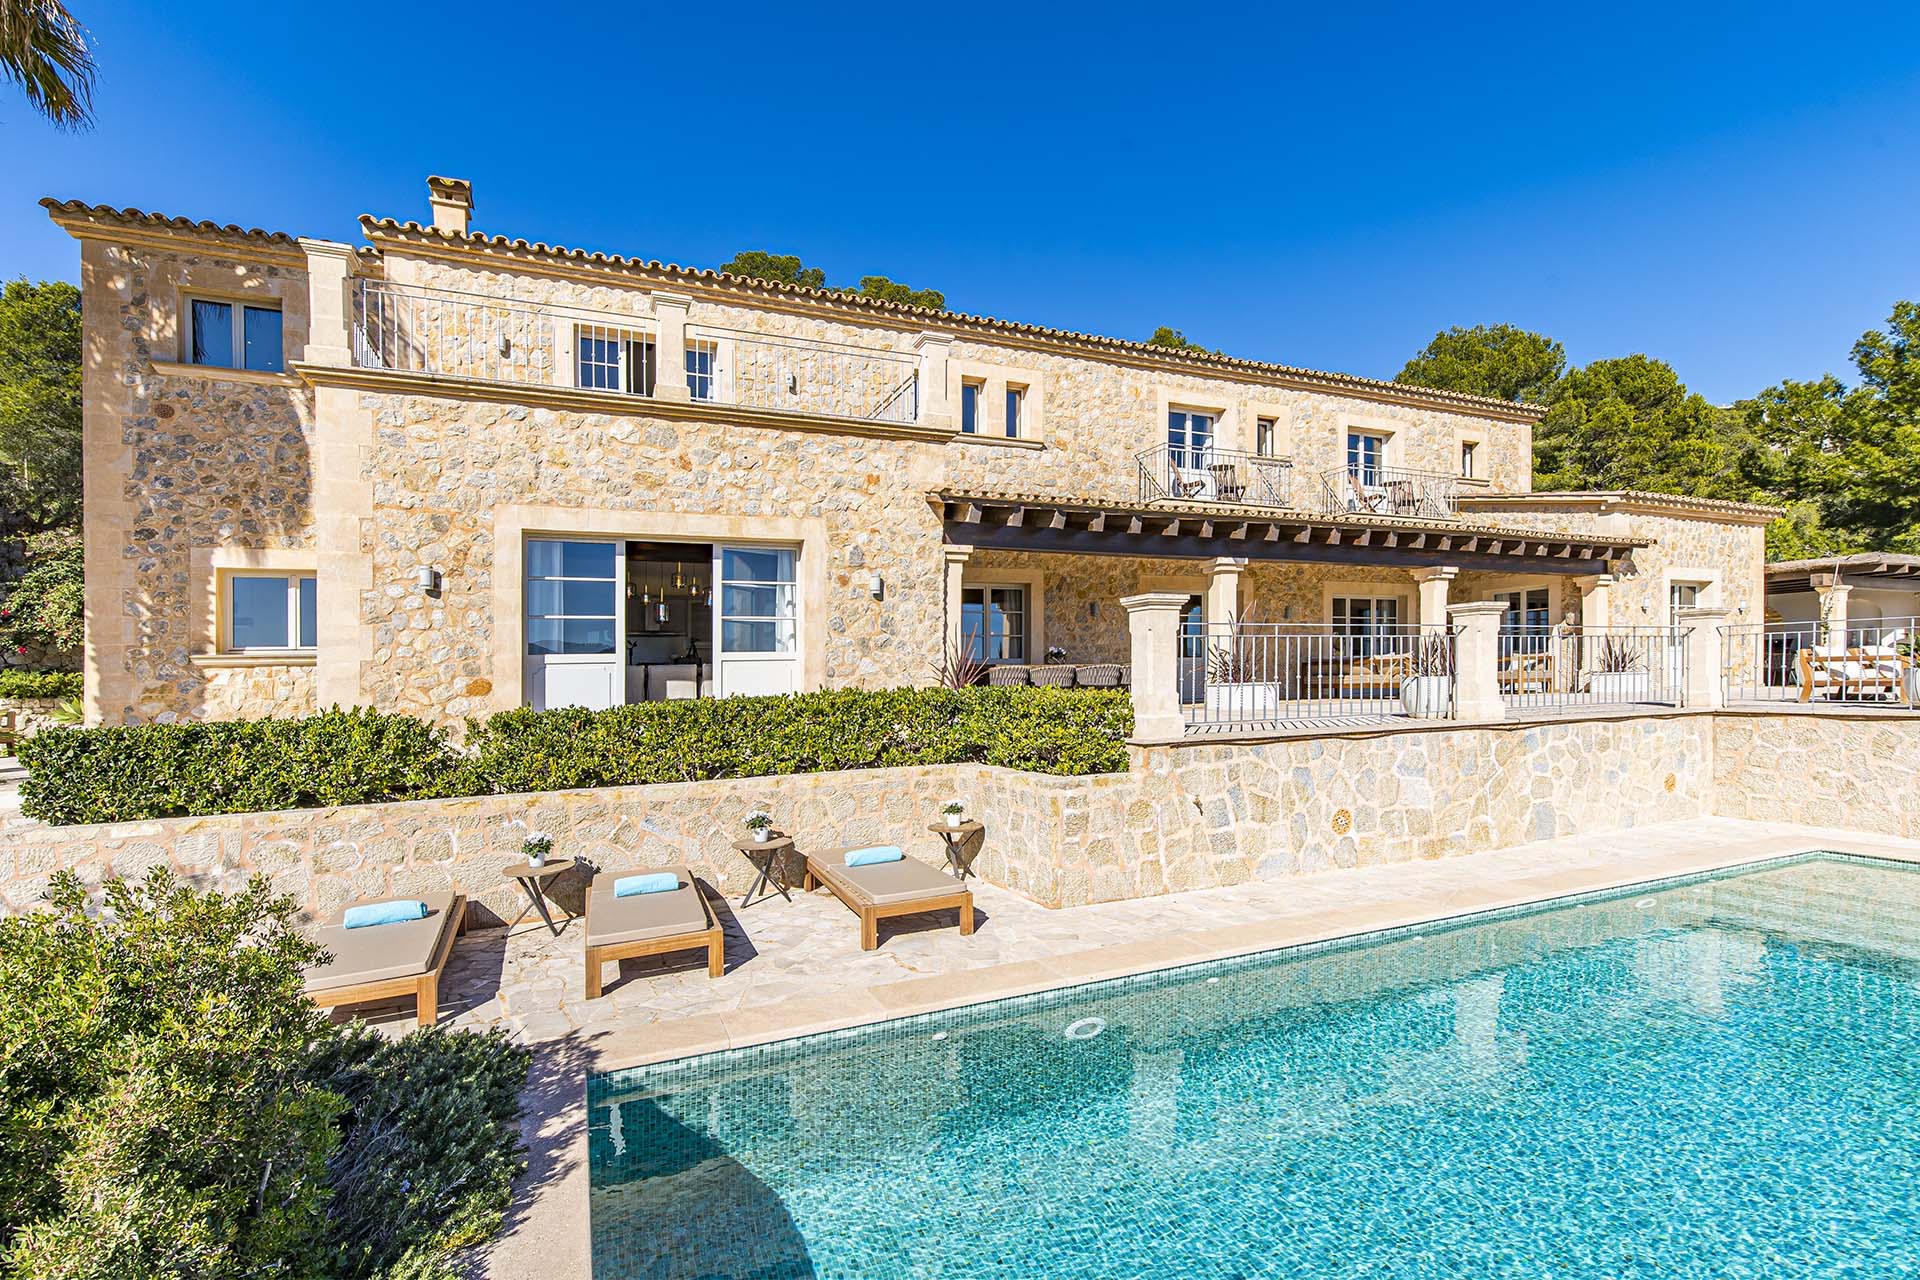  El alquiler a largo plazo en Mallorca es cada vez más popular: la oferta abarca desde pequeños pisos hasta prestigiosas villas como aquí, en Andratx